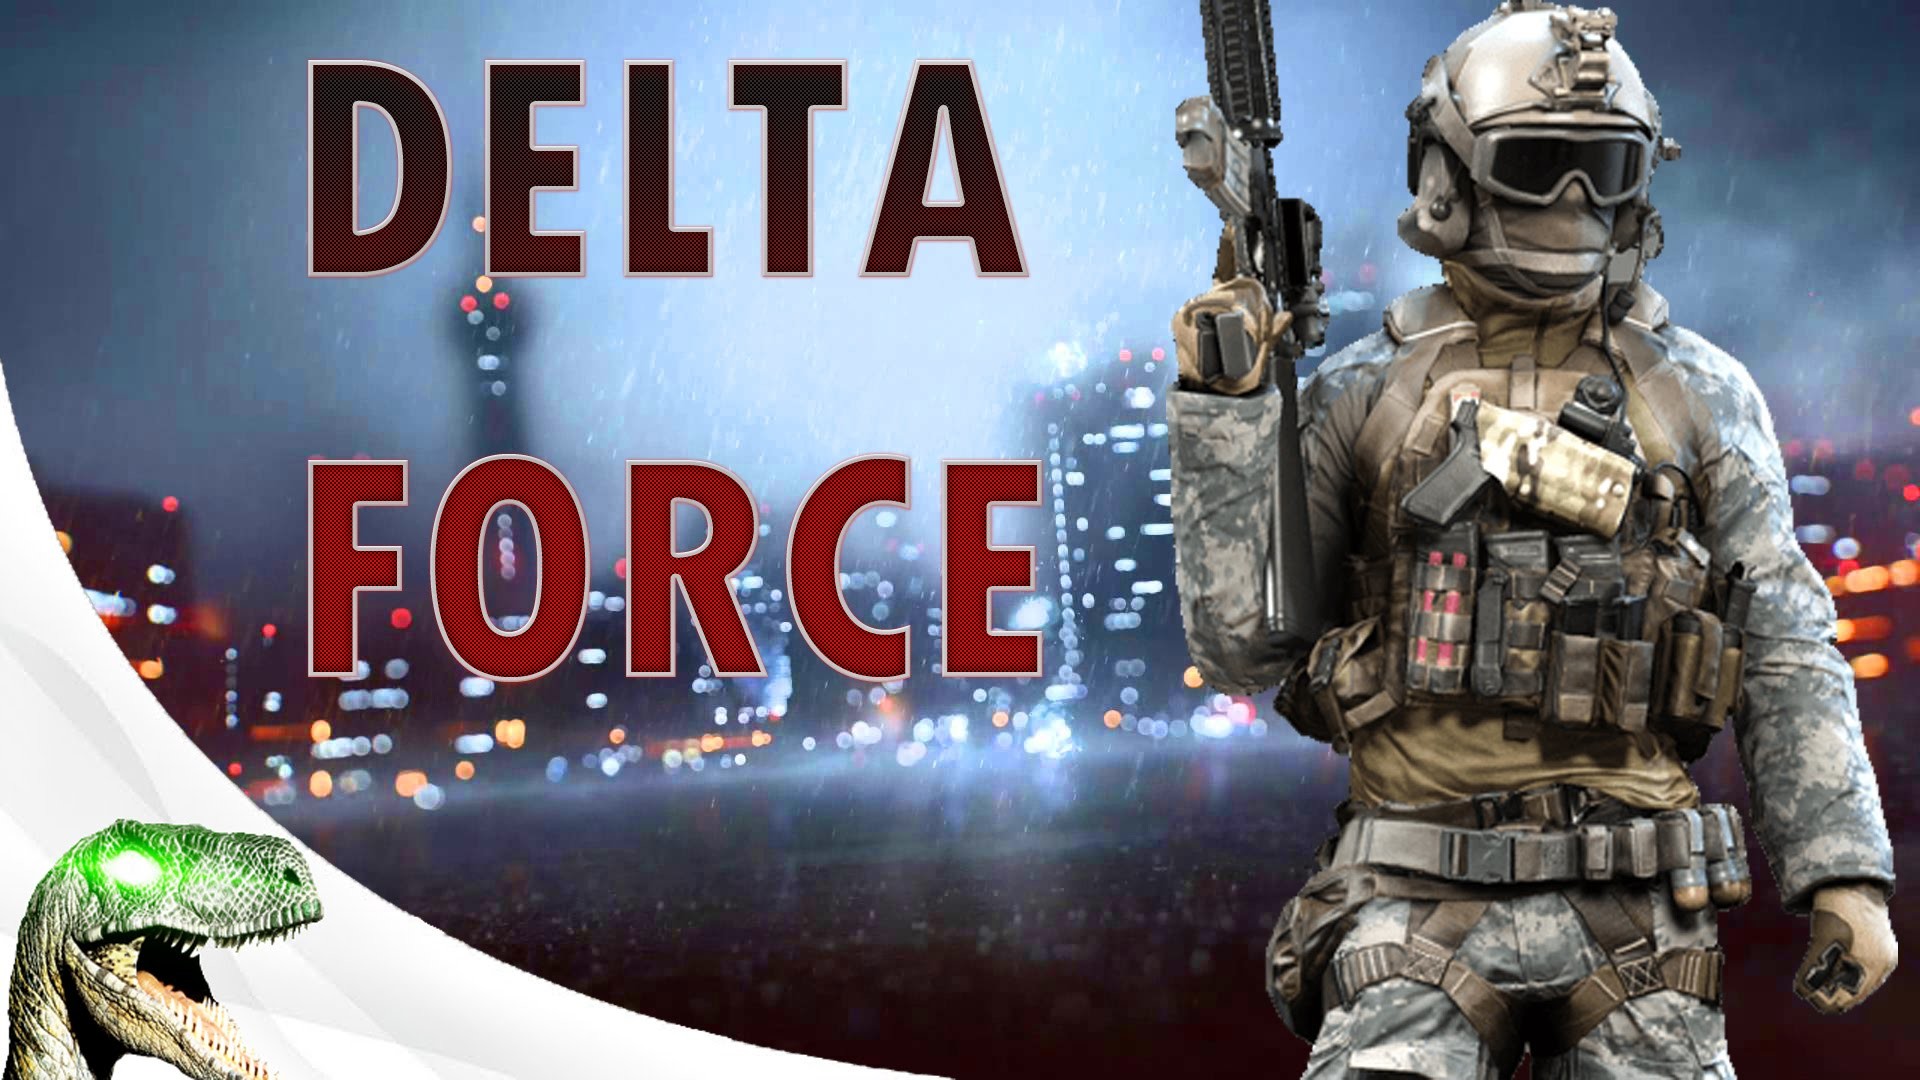 delta force wallpaper,gioco di avventura e azione,gioco sparatutto,gioco per pc,soldato,giochi